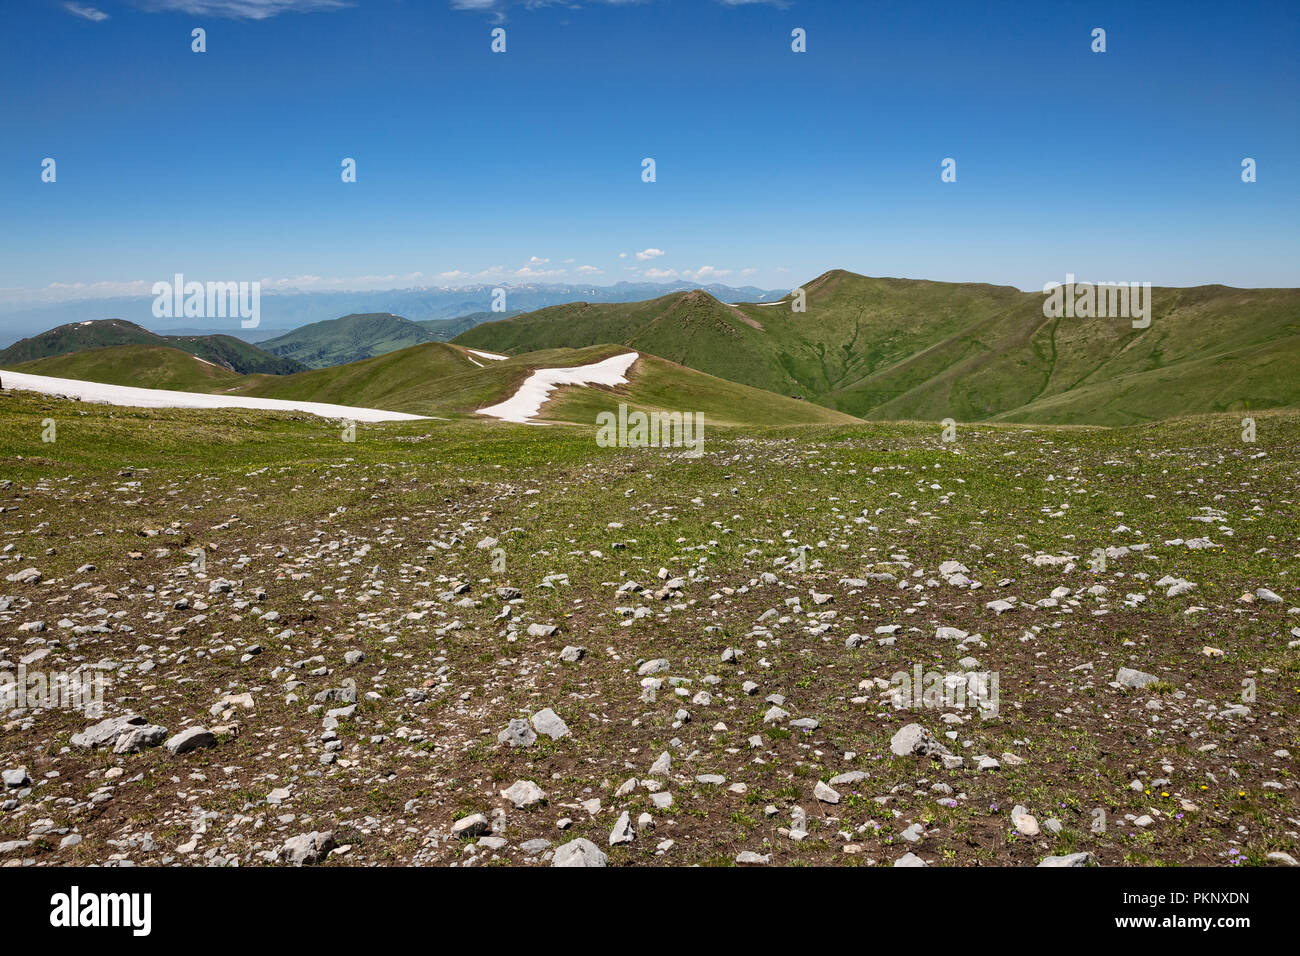 Foothills of Terskey Ala-Too mountain range as seen from Anvar Pass, Keskenkyia Loop trek, Jyrgalan, Kyrgyzstan Stock Photo